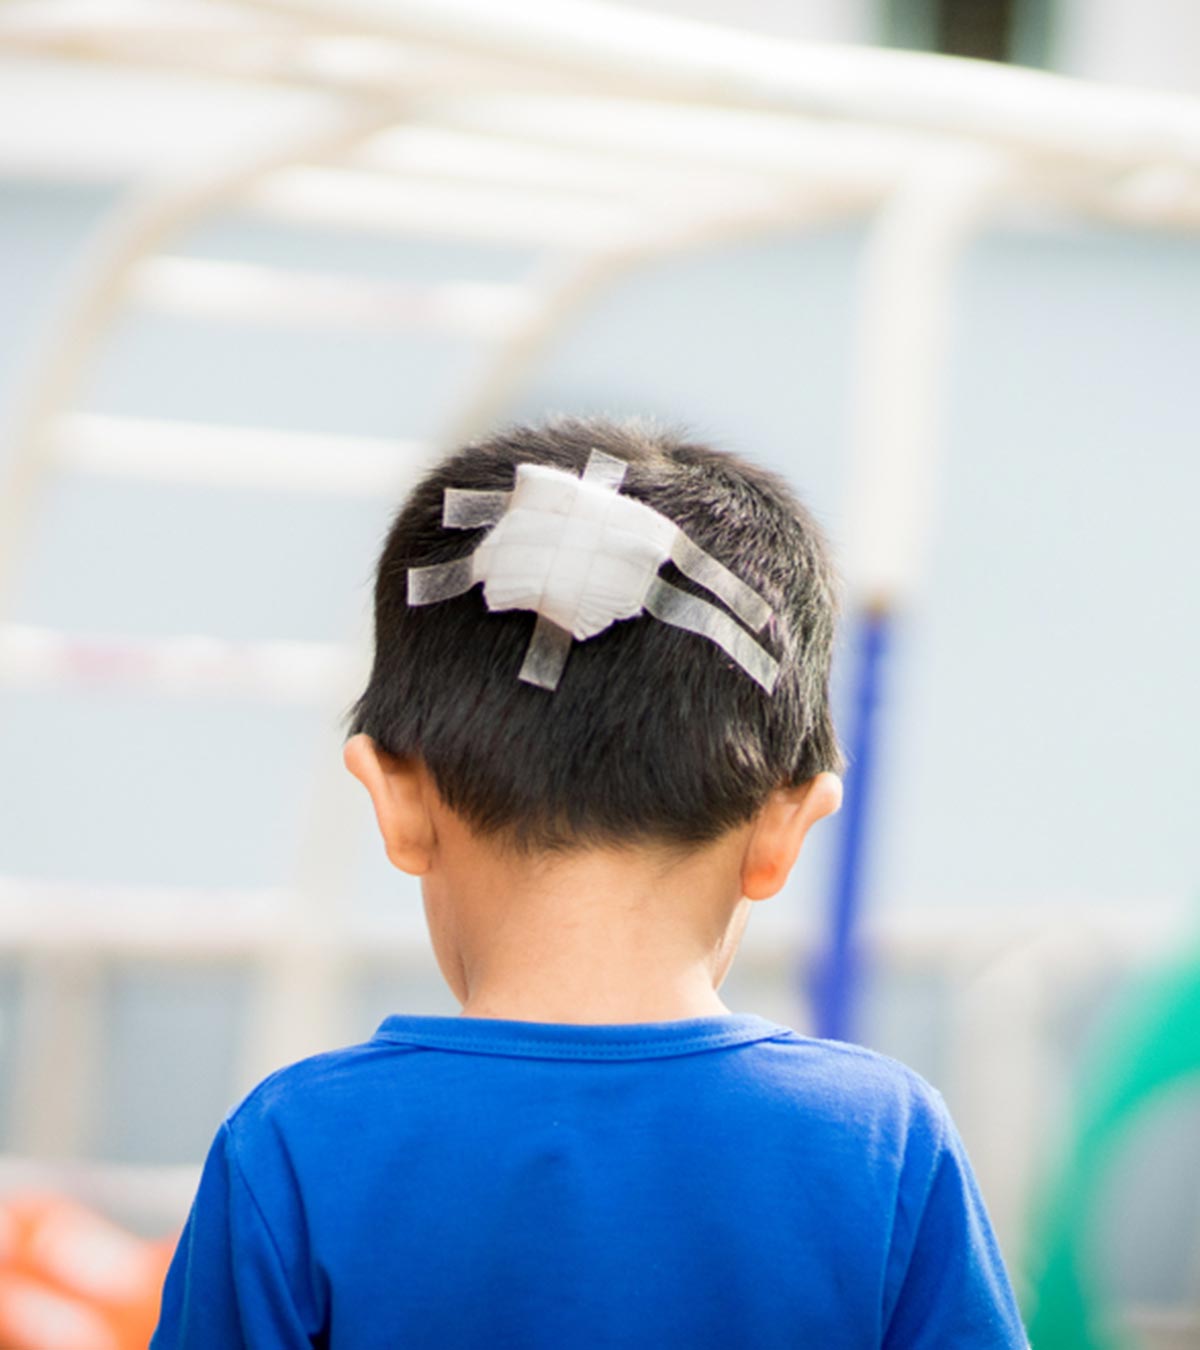 बच्चों के सिर में चोट लगना: प्रकार, कारण, इलाज व जटिलताएं | Head Injury in Children in Hindi